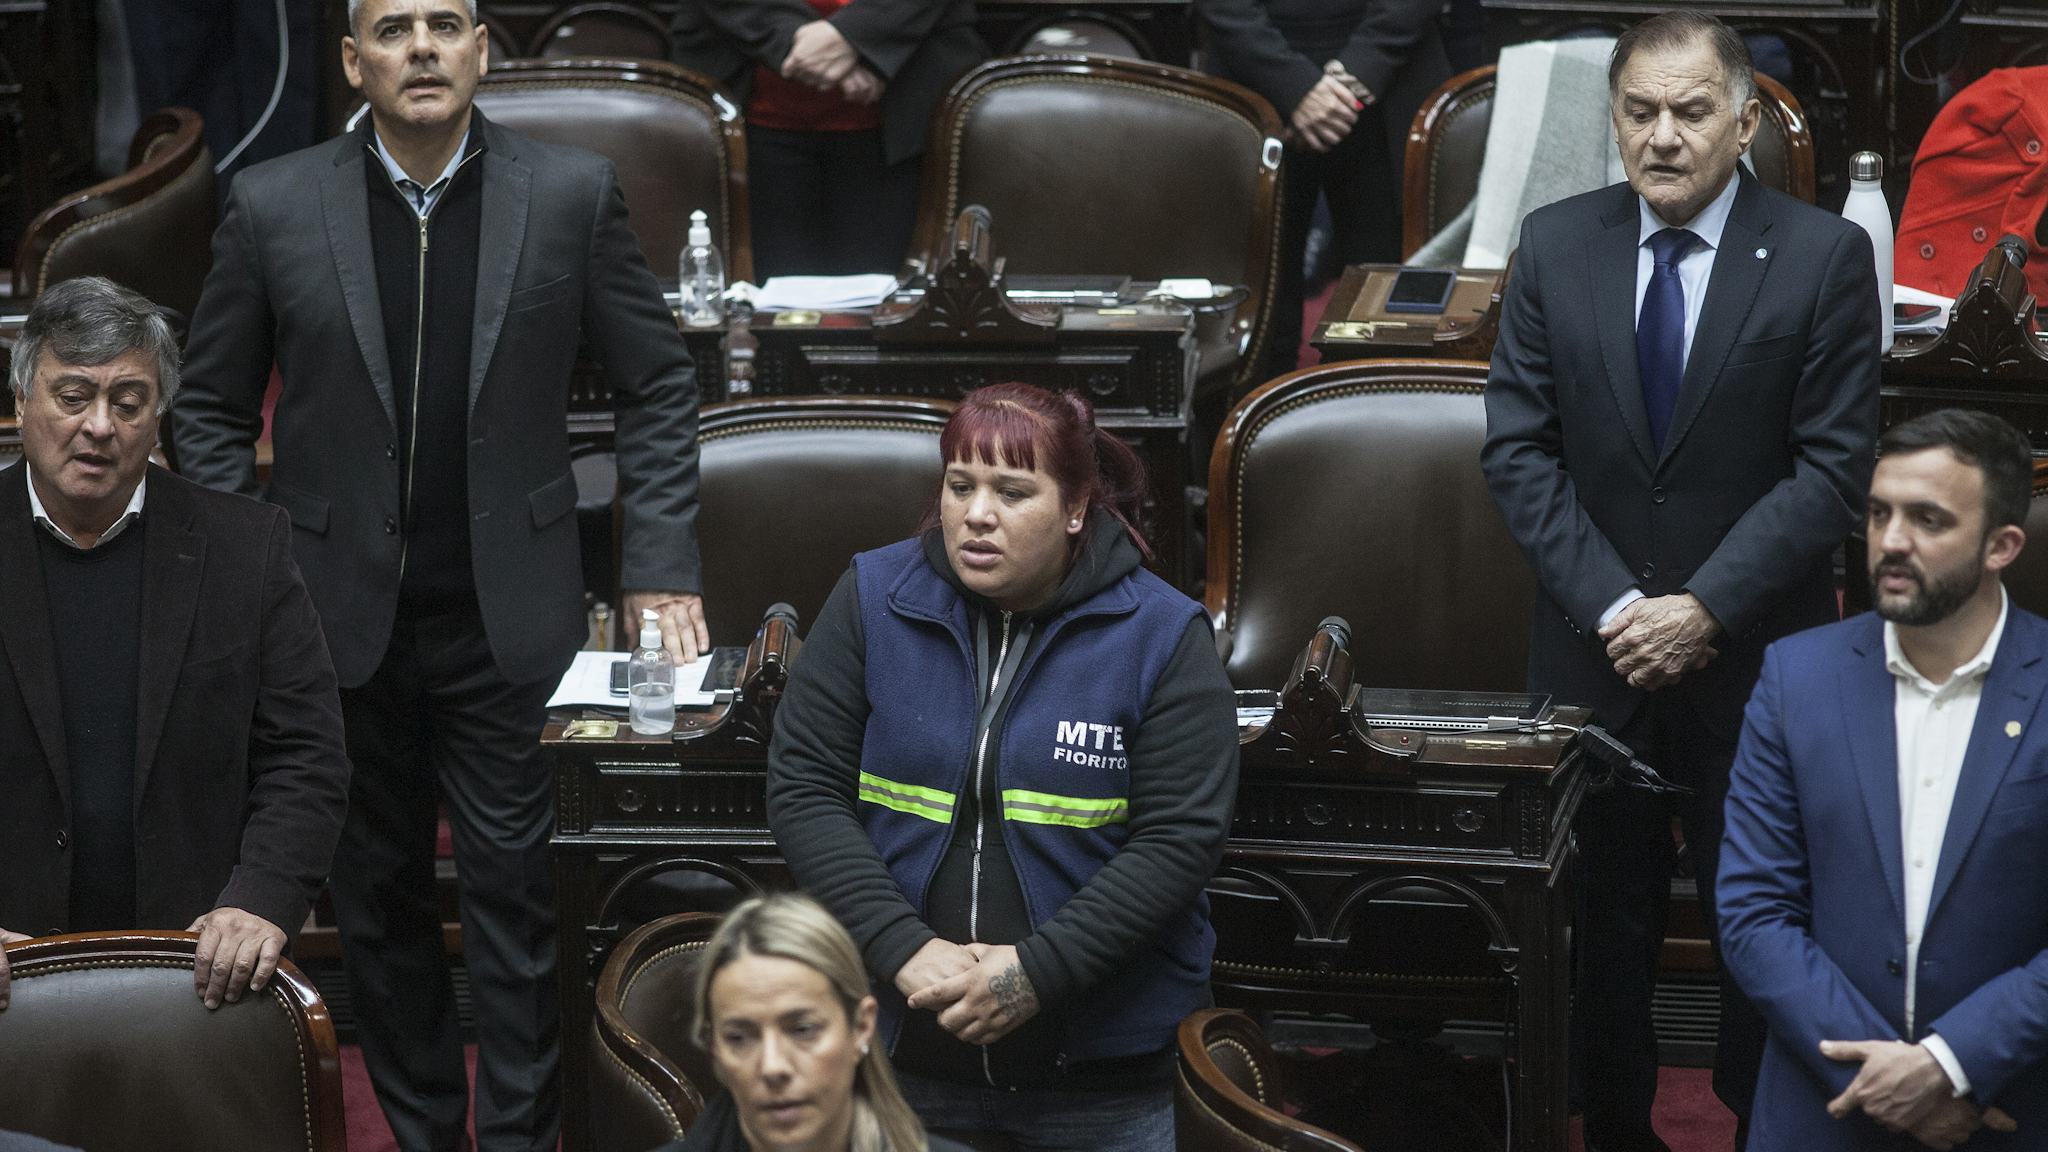 Natalia Zaracho sjunger nationalsången i Argentinas parlament. Hon bär arbetsuniform och är omgiven av parlamentariker i kostym.